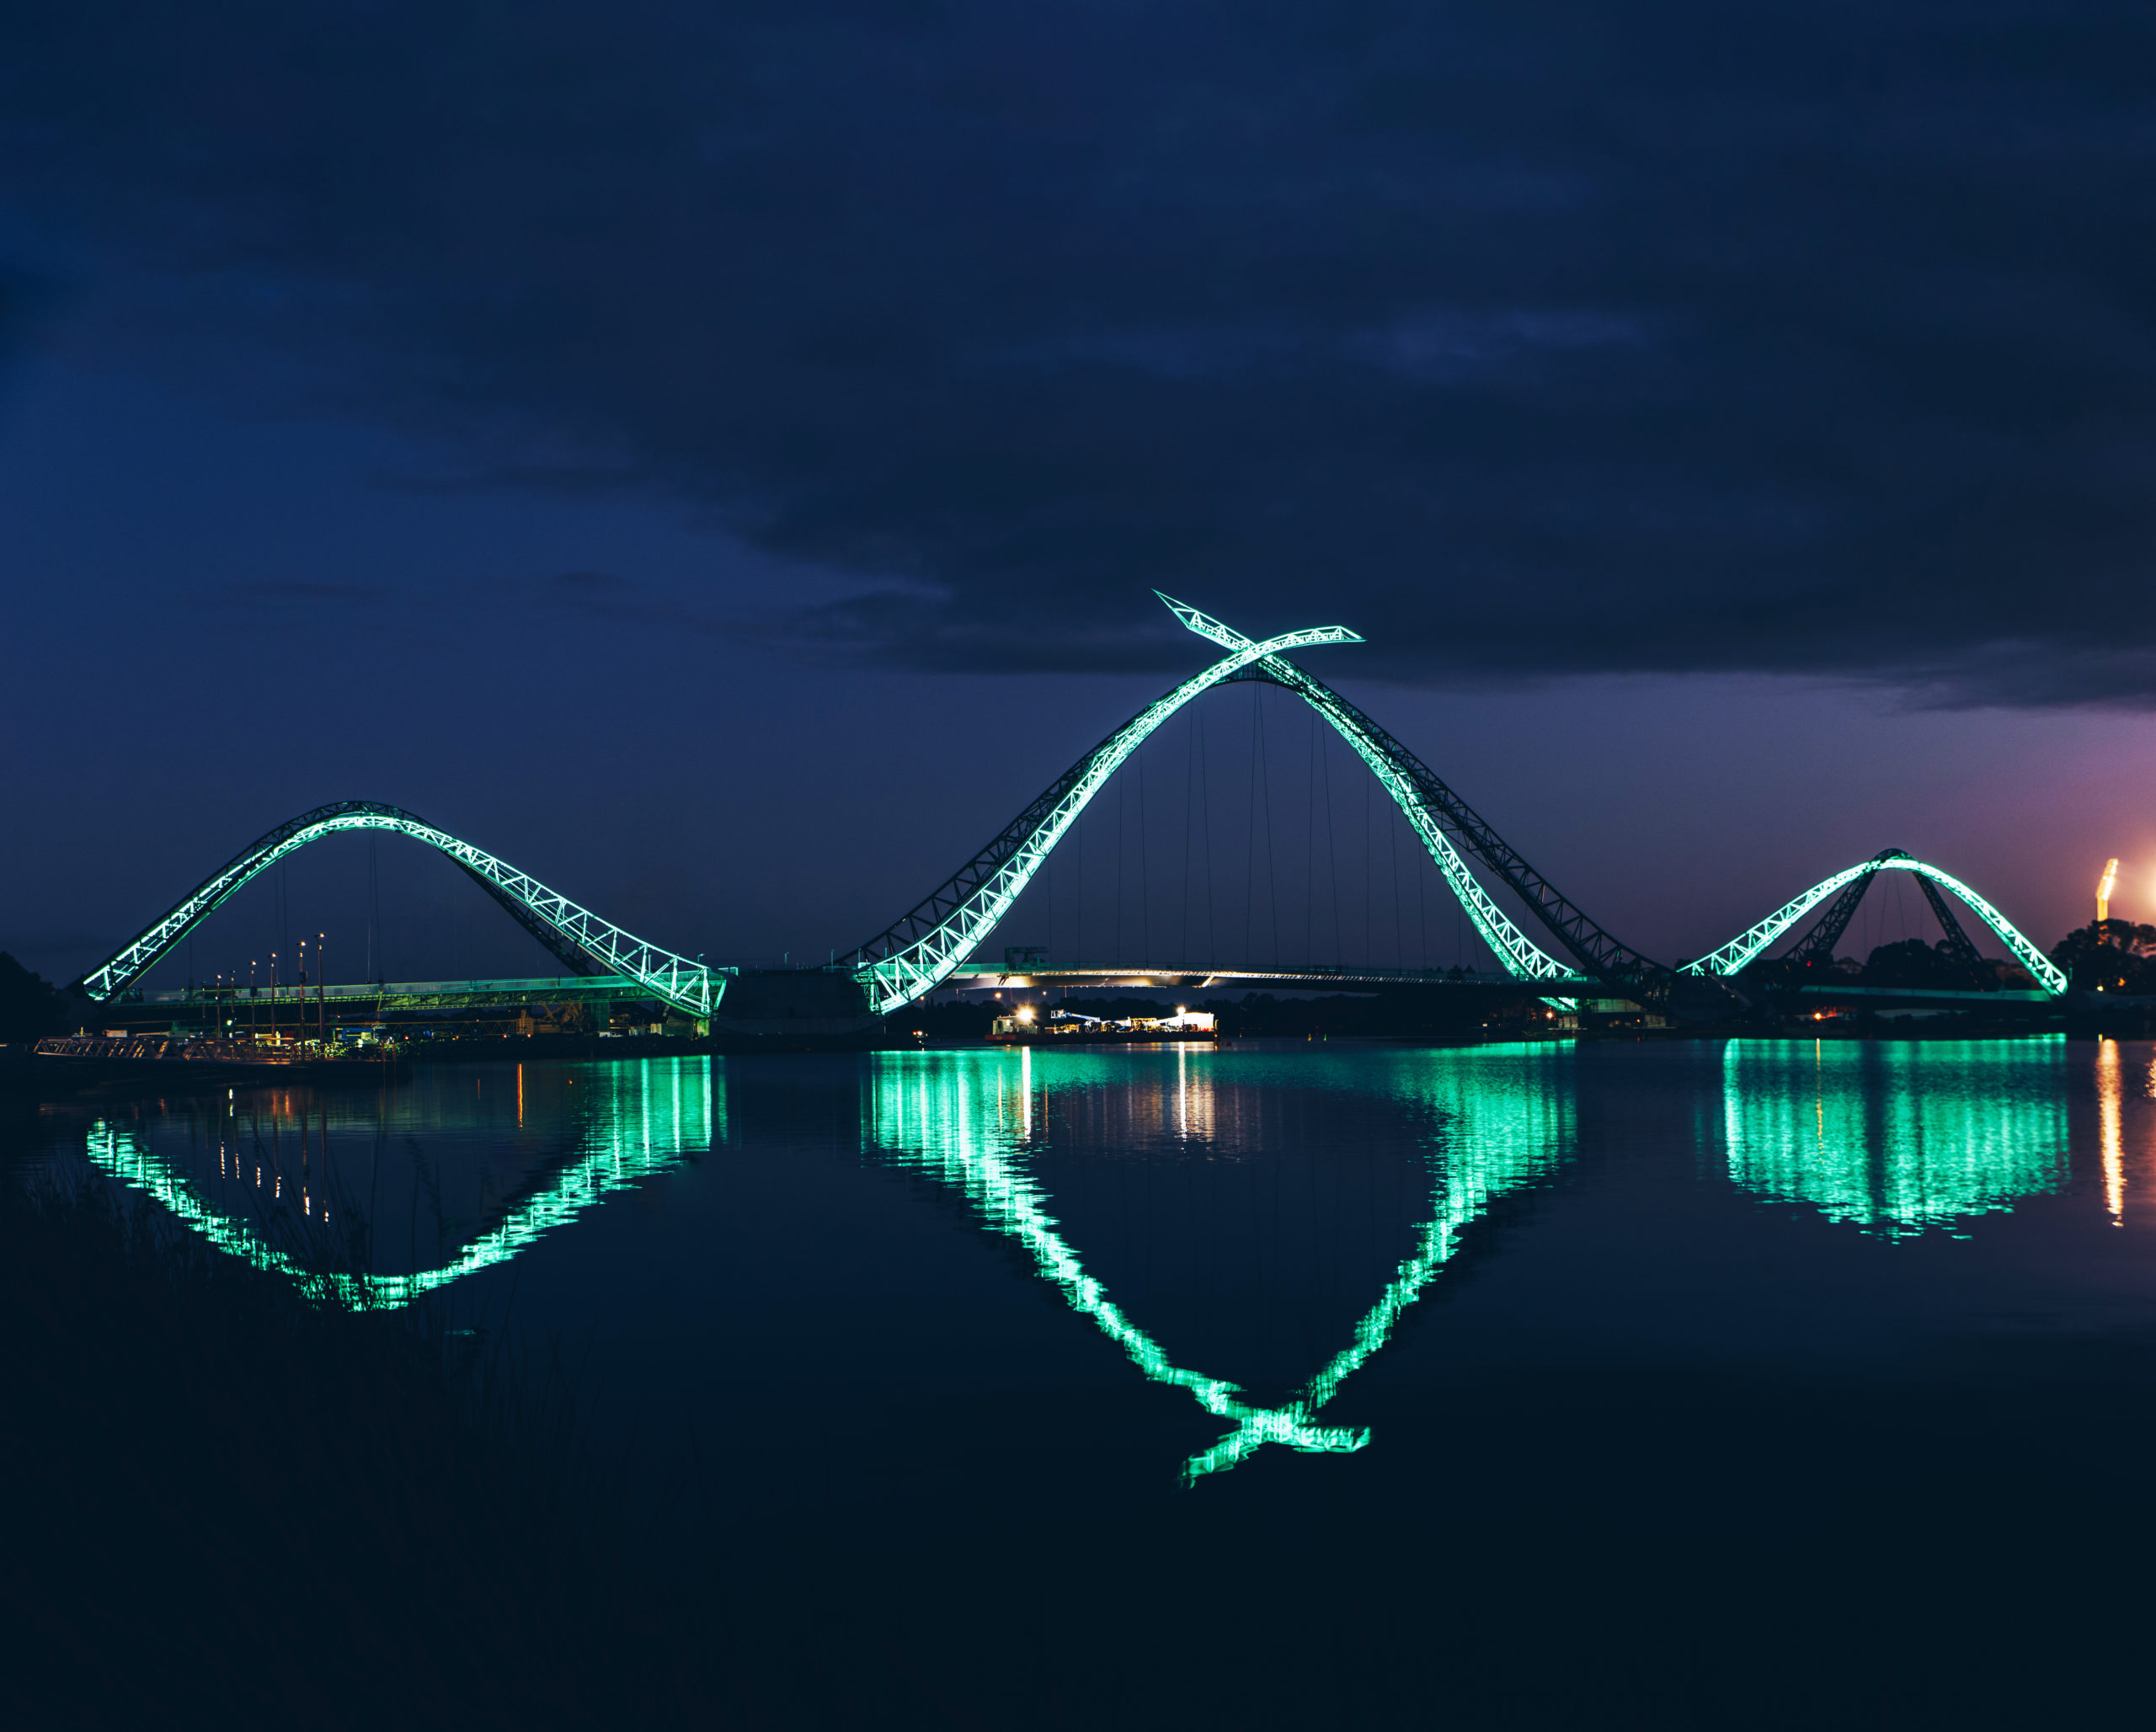 Matagarup Bridge at night, Perth WA